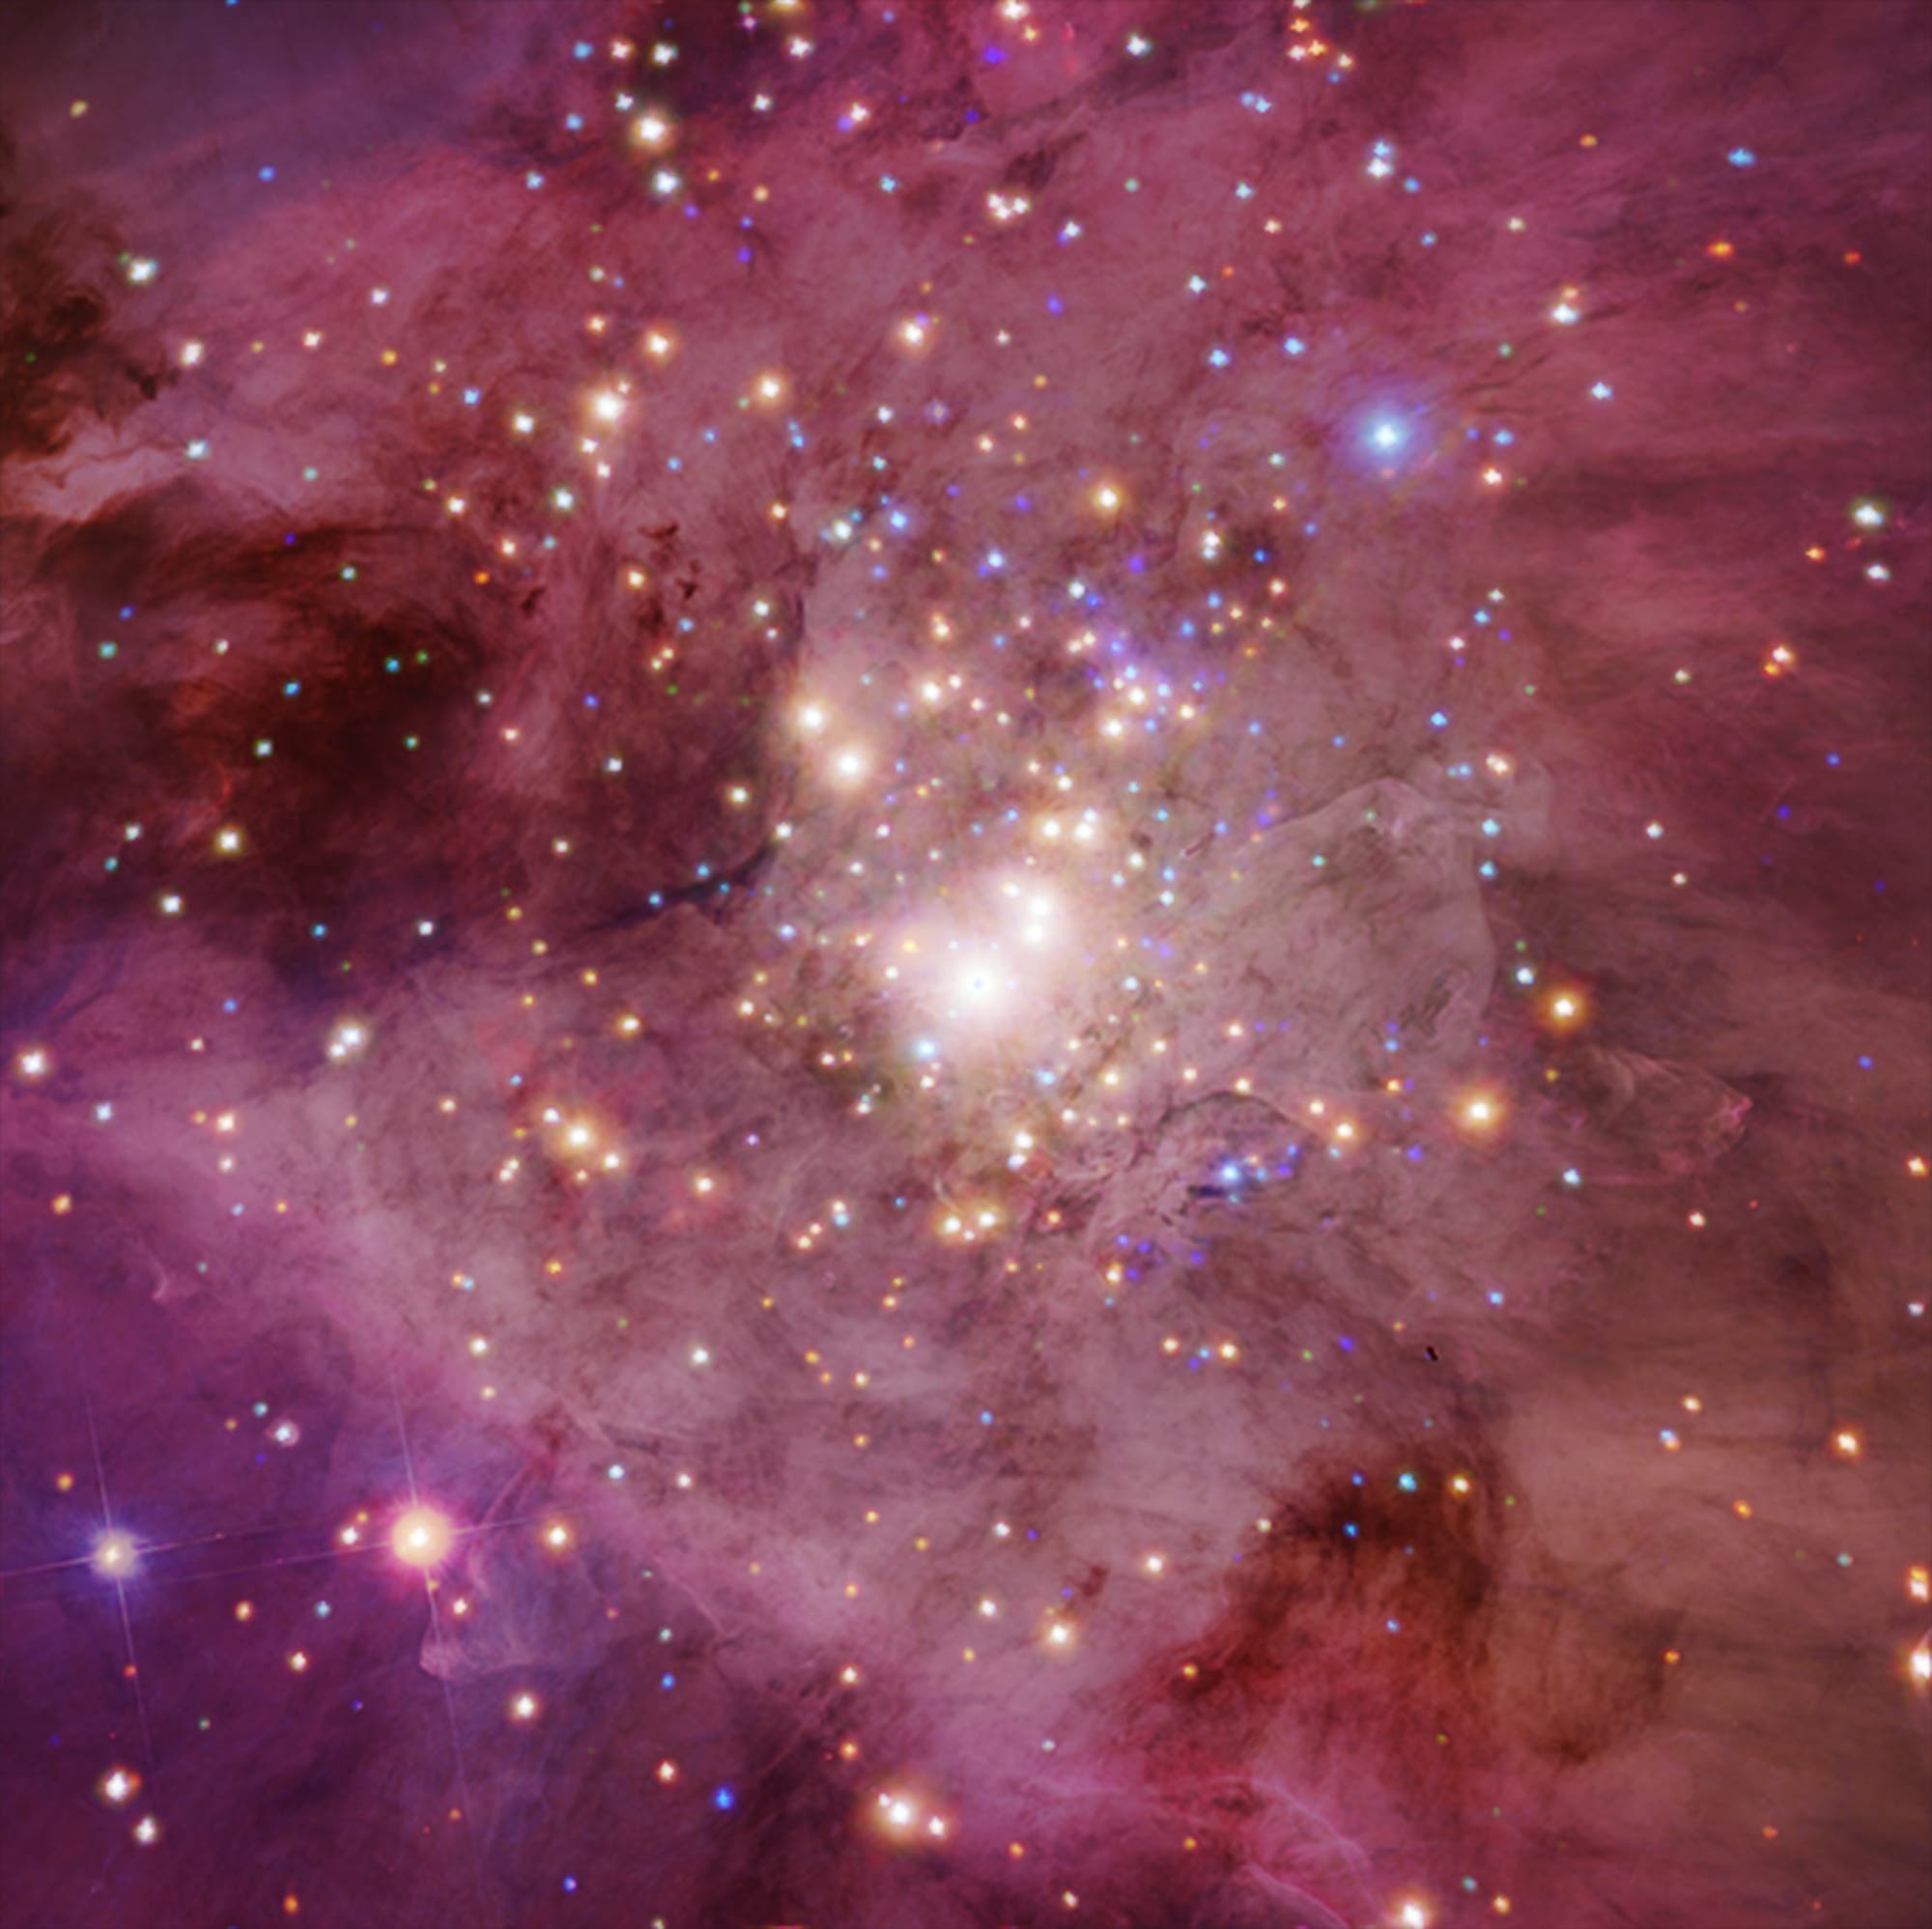 Kompositbild des Orion-Nebels